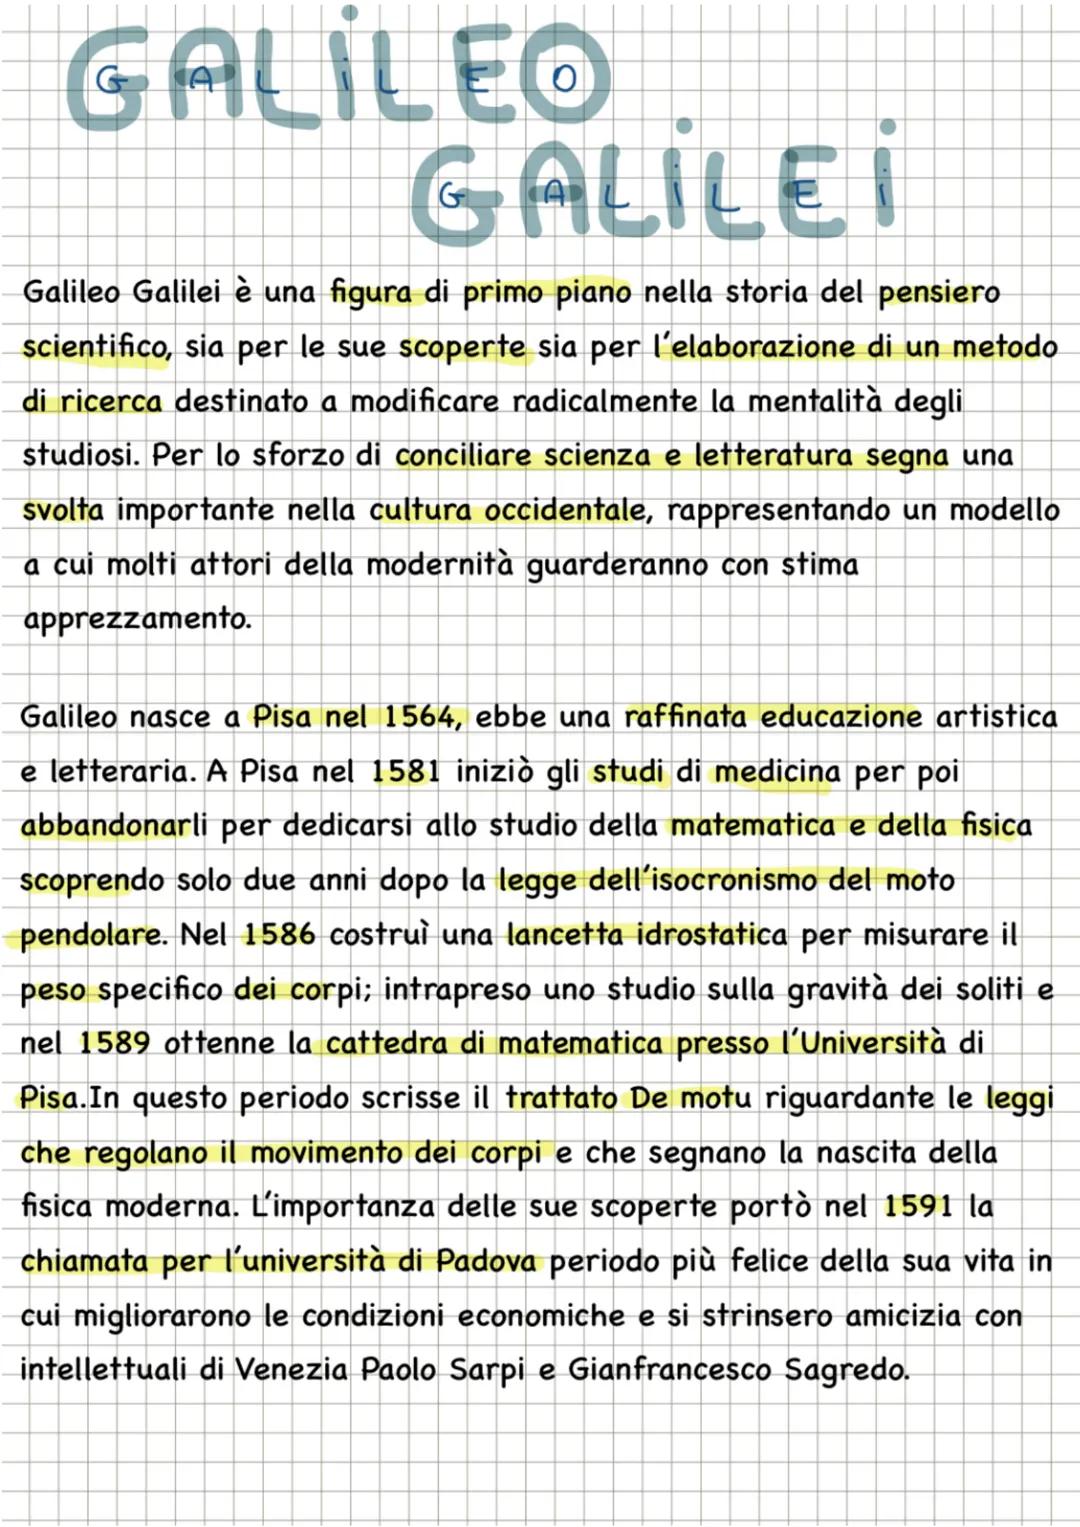 GALILEO
GALILEI
Galileo Galilei è una figura di primo piano nella storia del pensiero
scientifico, sia per le sue scoperte sia per l'elabora